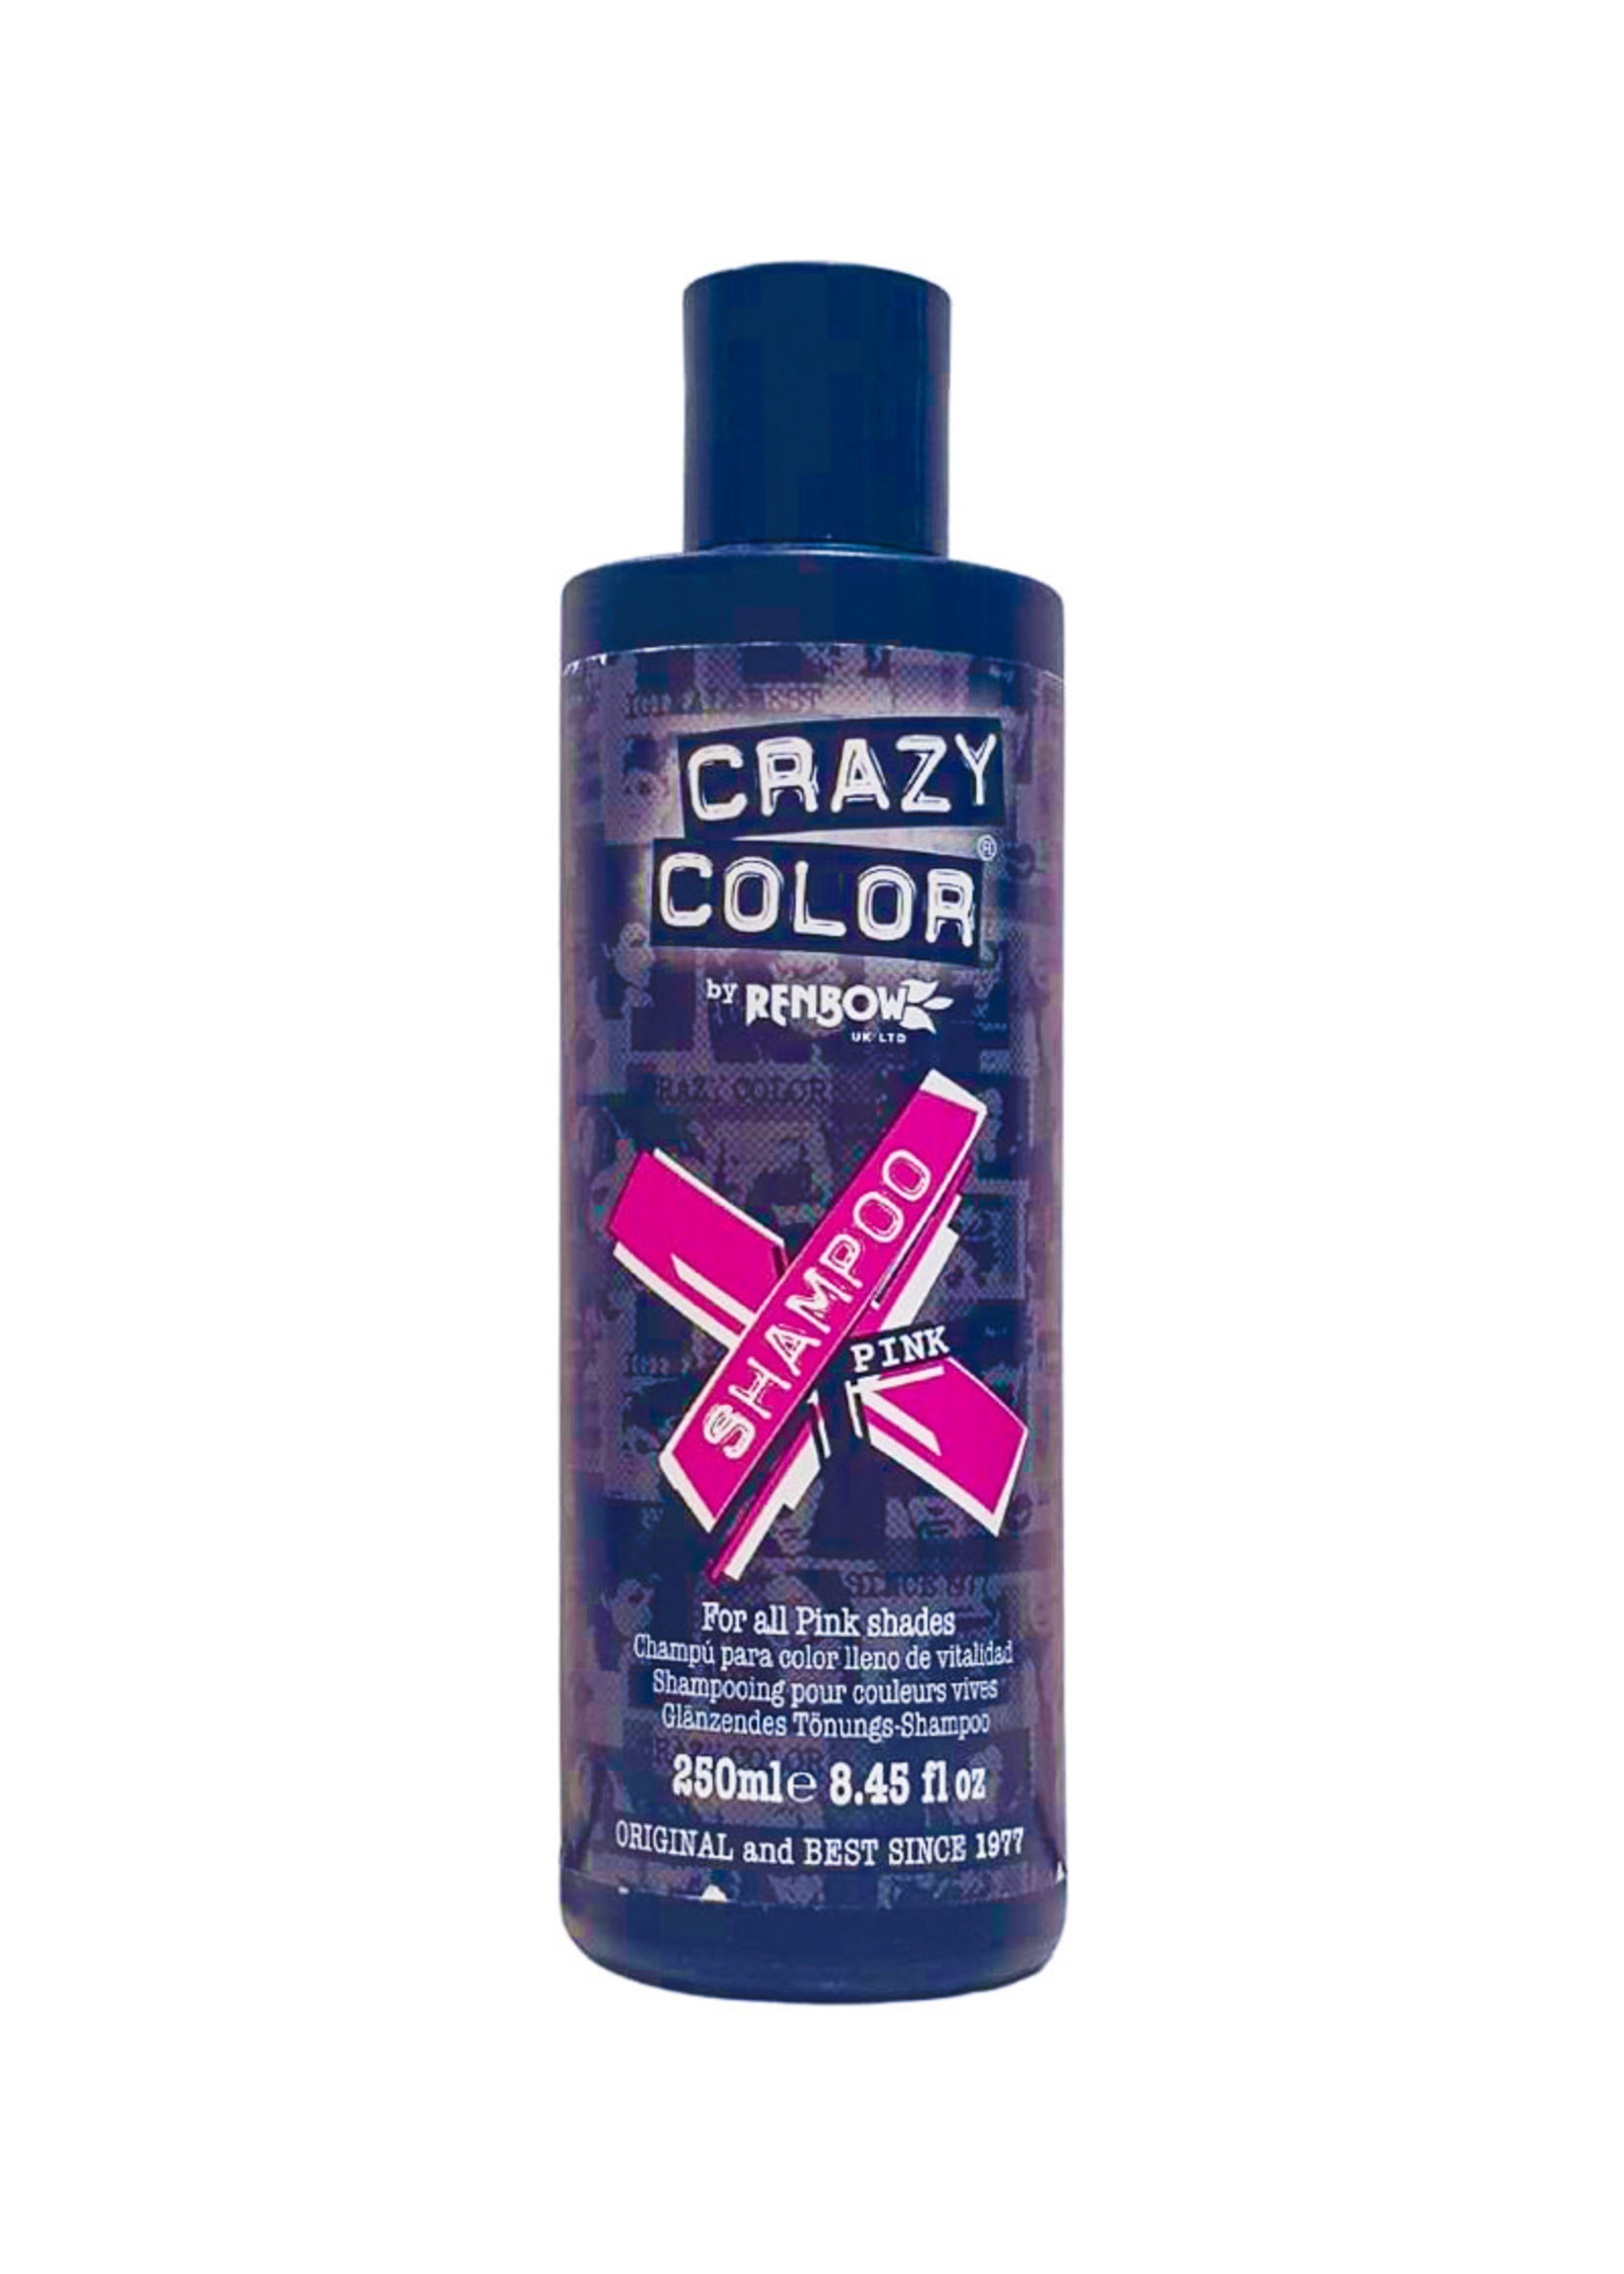 Crazy Colour Crazy Colour Pink Shampoo 250ml